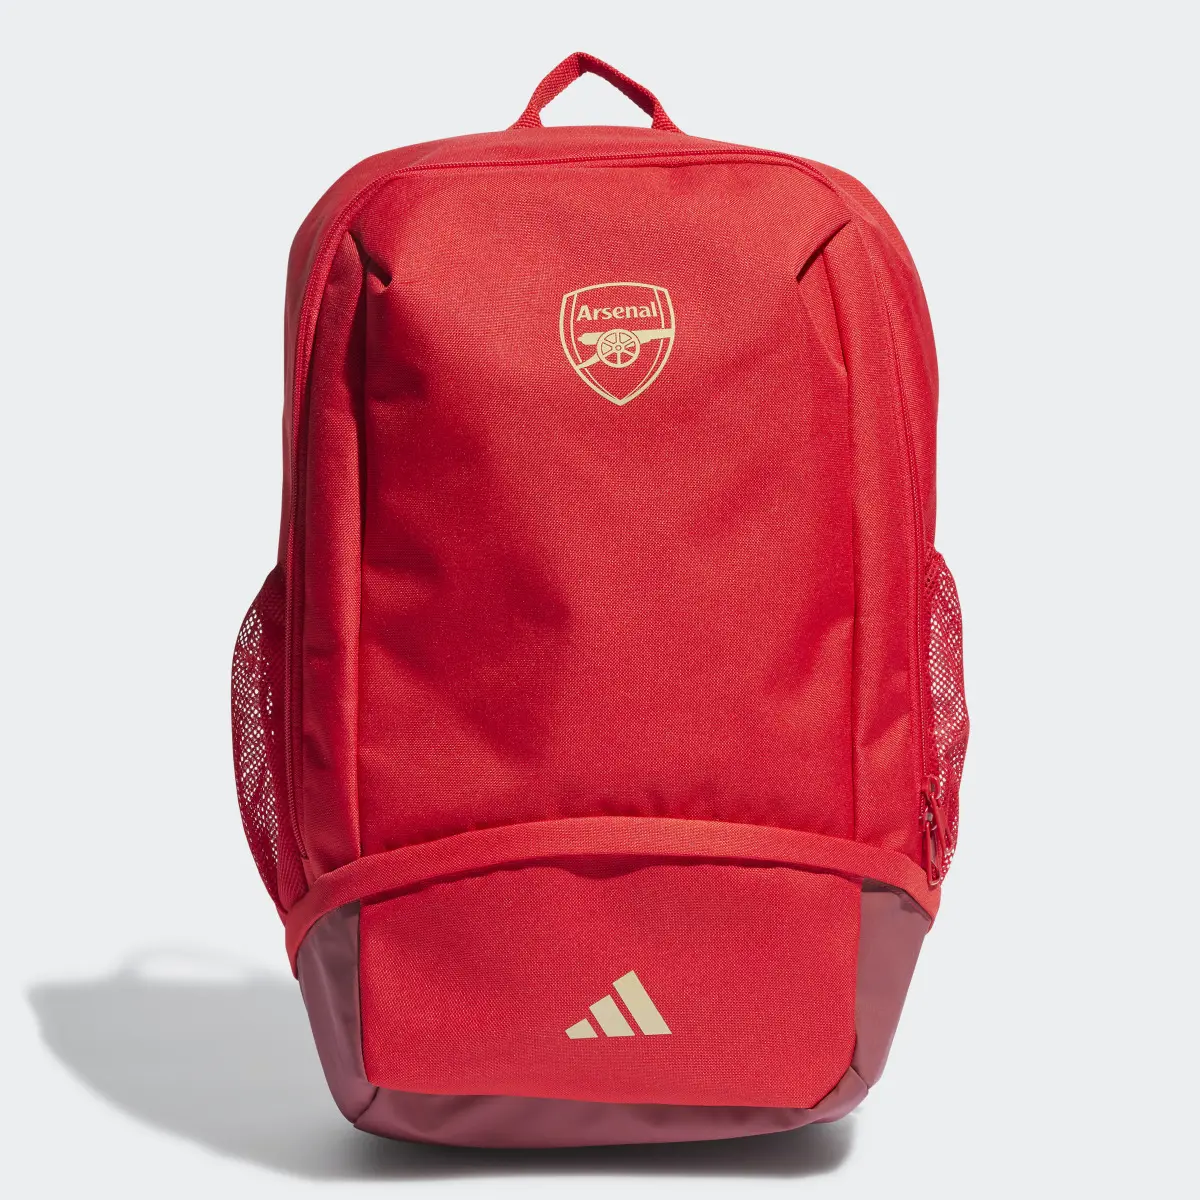 Adidas Arsenal Backpack. 1